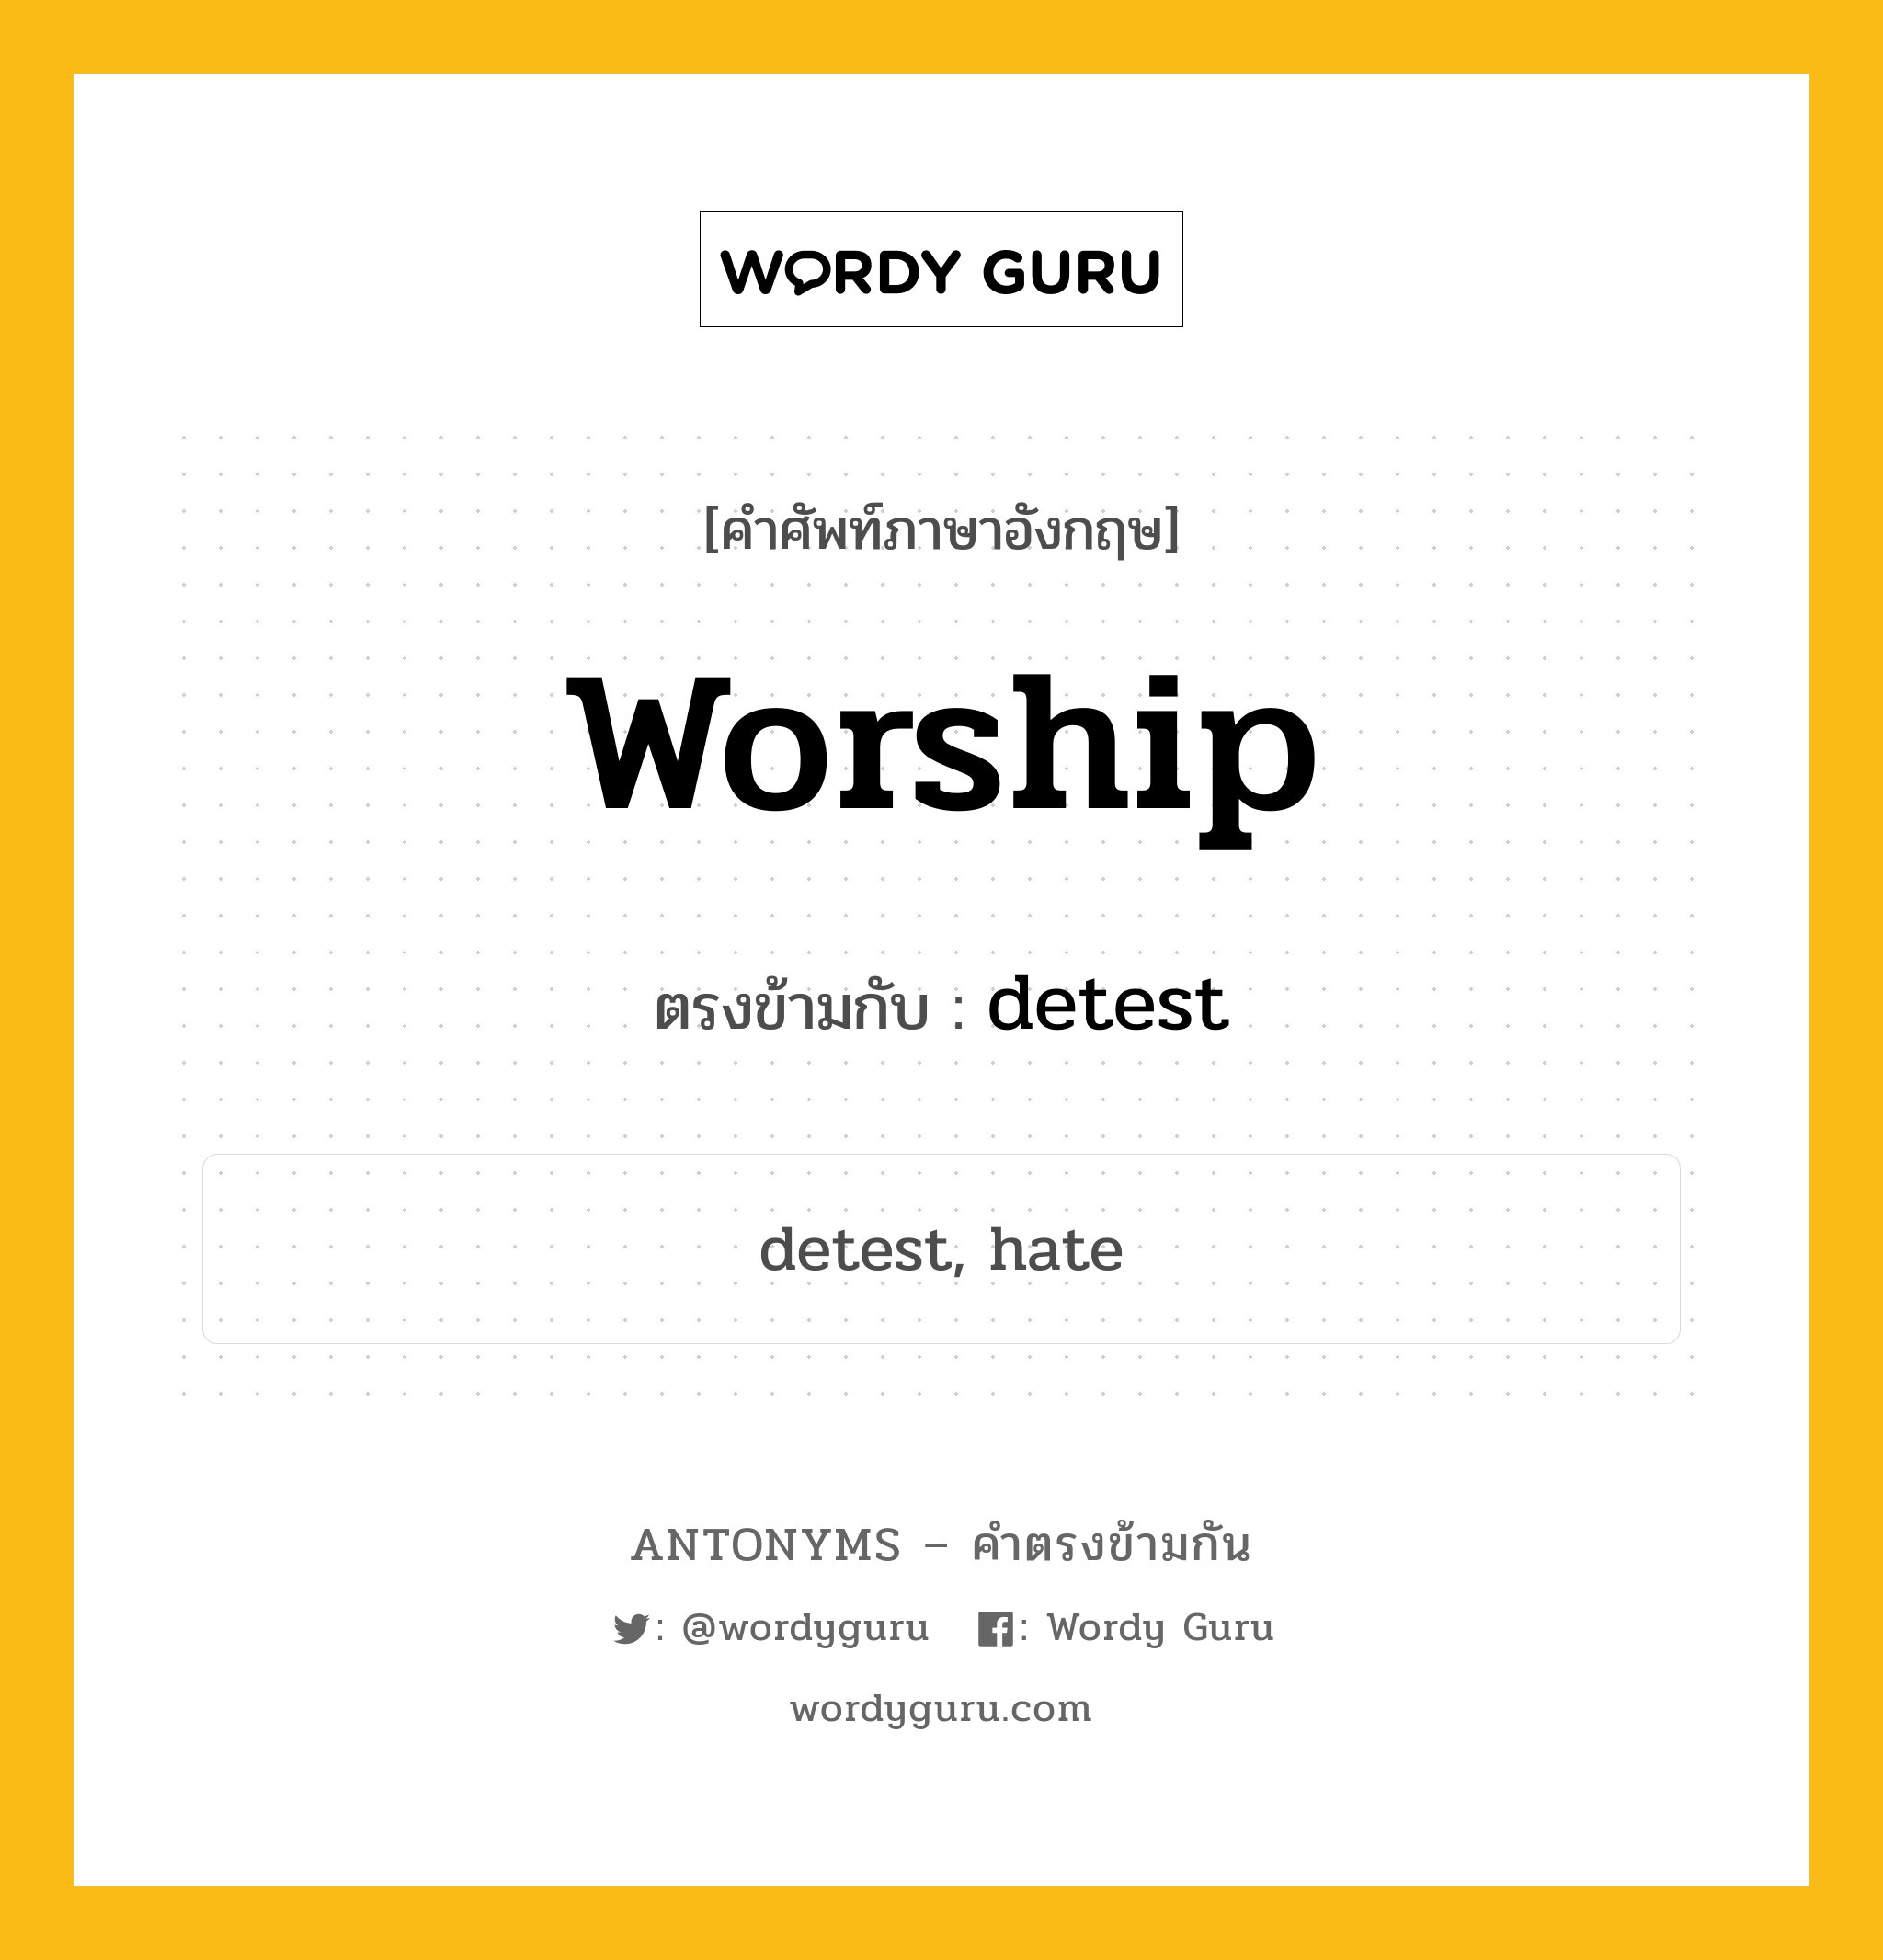 worship เป็นคำตรงข้ามกับคำไหนบ้าง?, คำศัพท์ภาษาอังกฤษ worship ตรงข้ามกับ detest หมวด detest